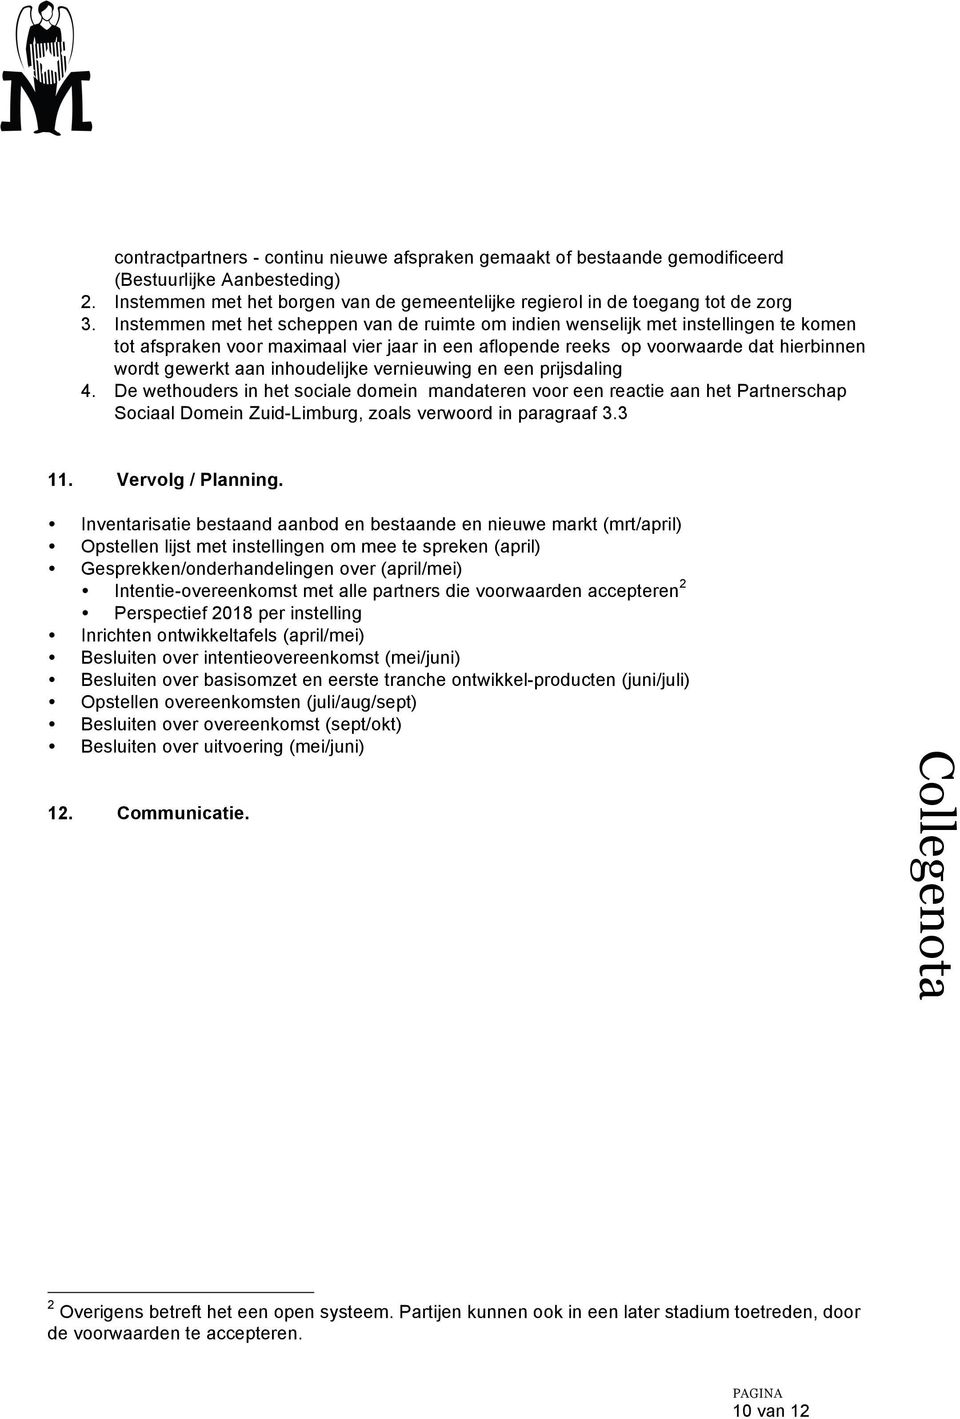 inhoudelijke vernieuwing en een prijsdaling 4. De wethouders in het sociale domein mandateren voor een reactie aan het Partnerschap Sociaal Domein Zuid-Limburg, zoals verwoord in paragraaf 3.3 11.